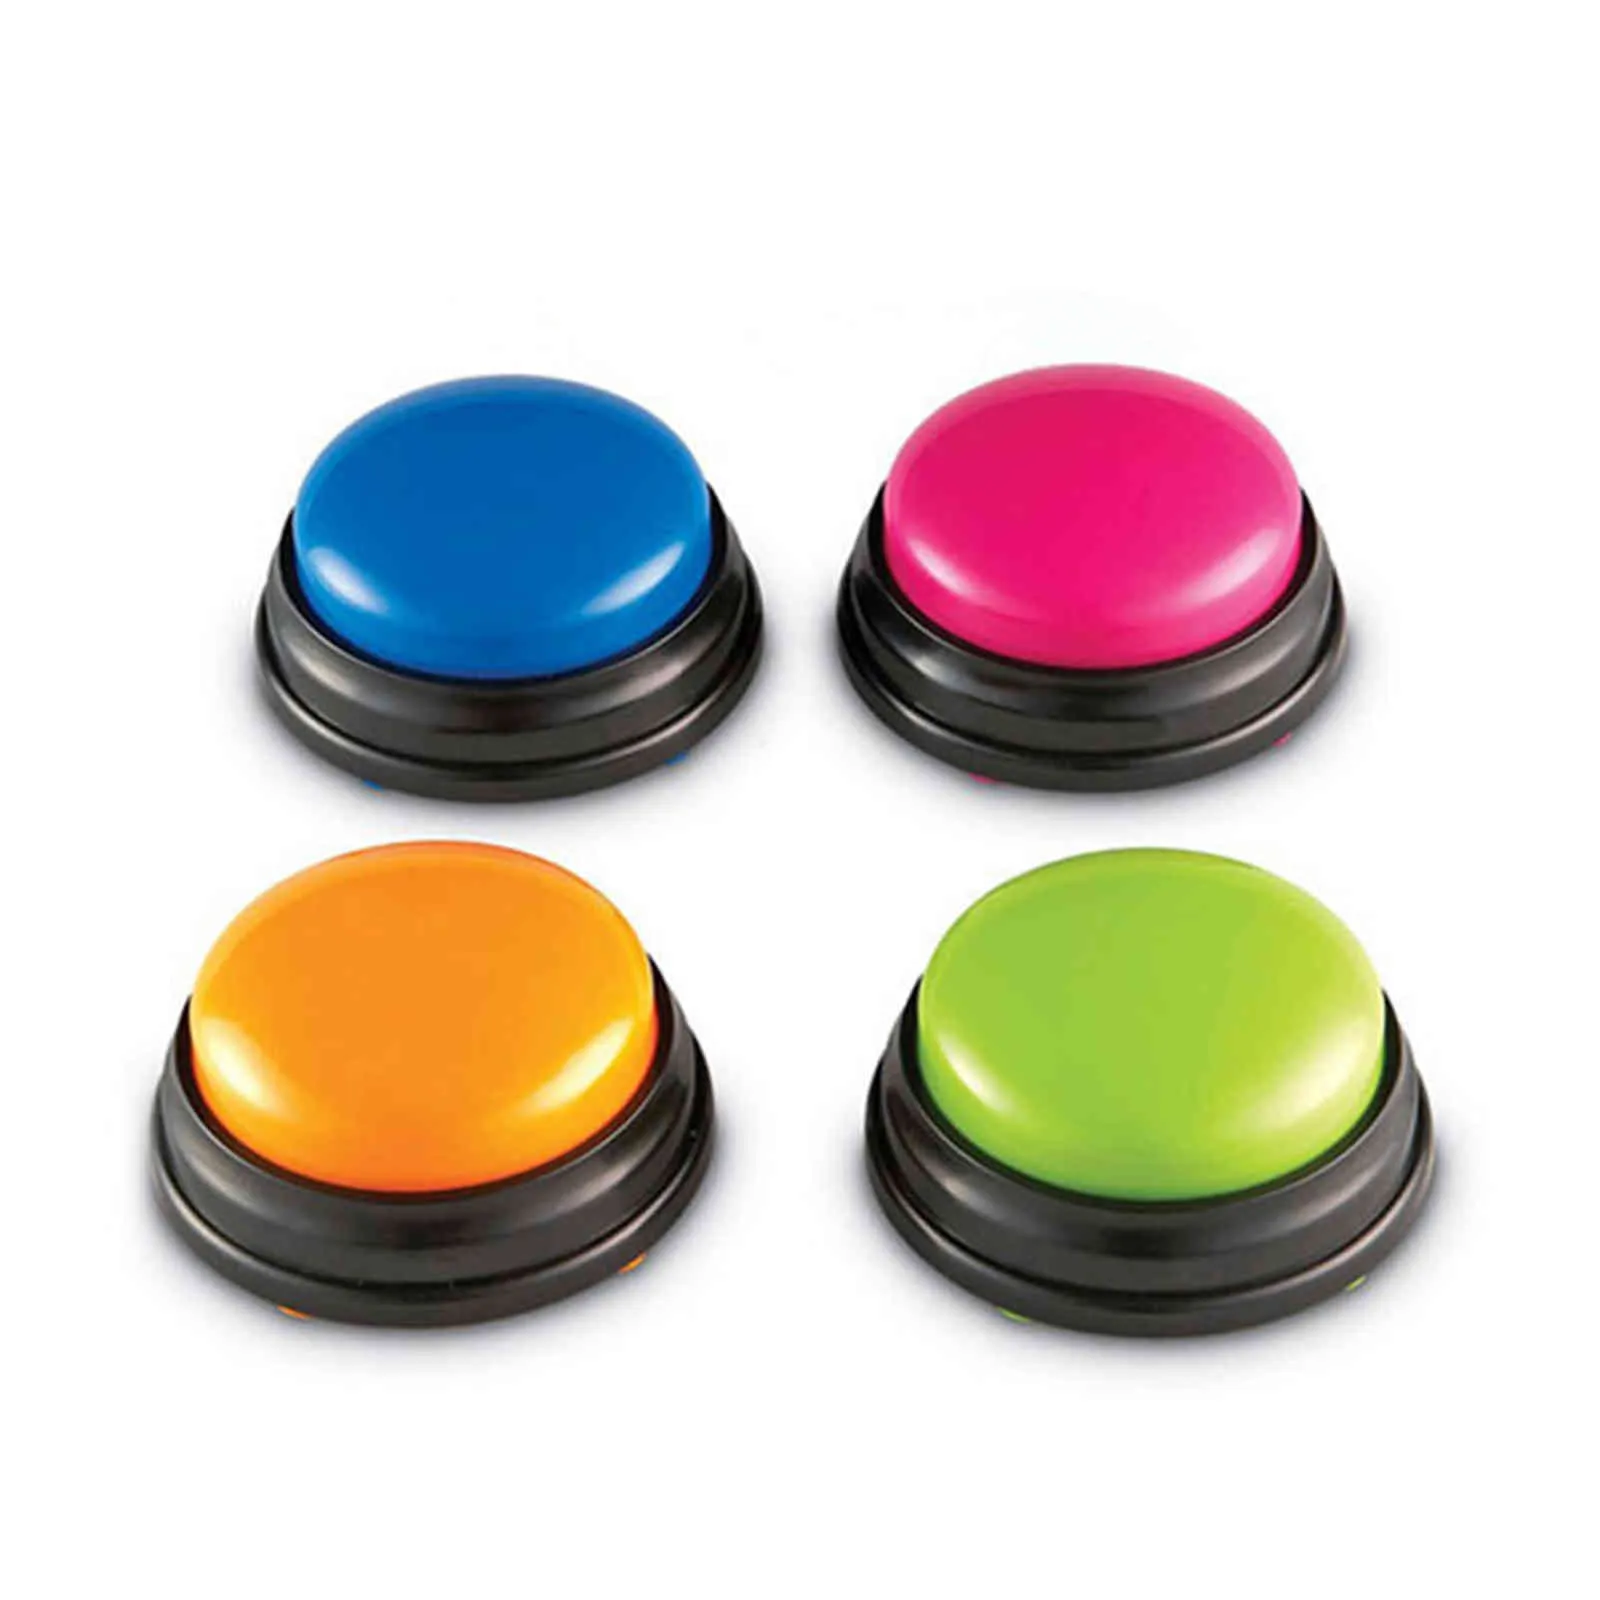 Запись звуковой кнопку маленький размер легкий голос переноса для детей Интерактивные кнопки «Ответ» Orange Pink Blue Green Maker237U